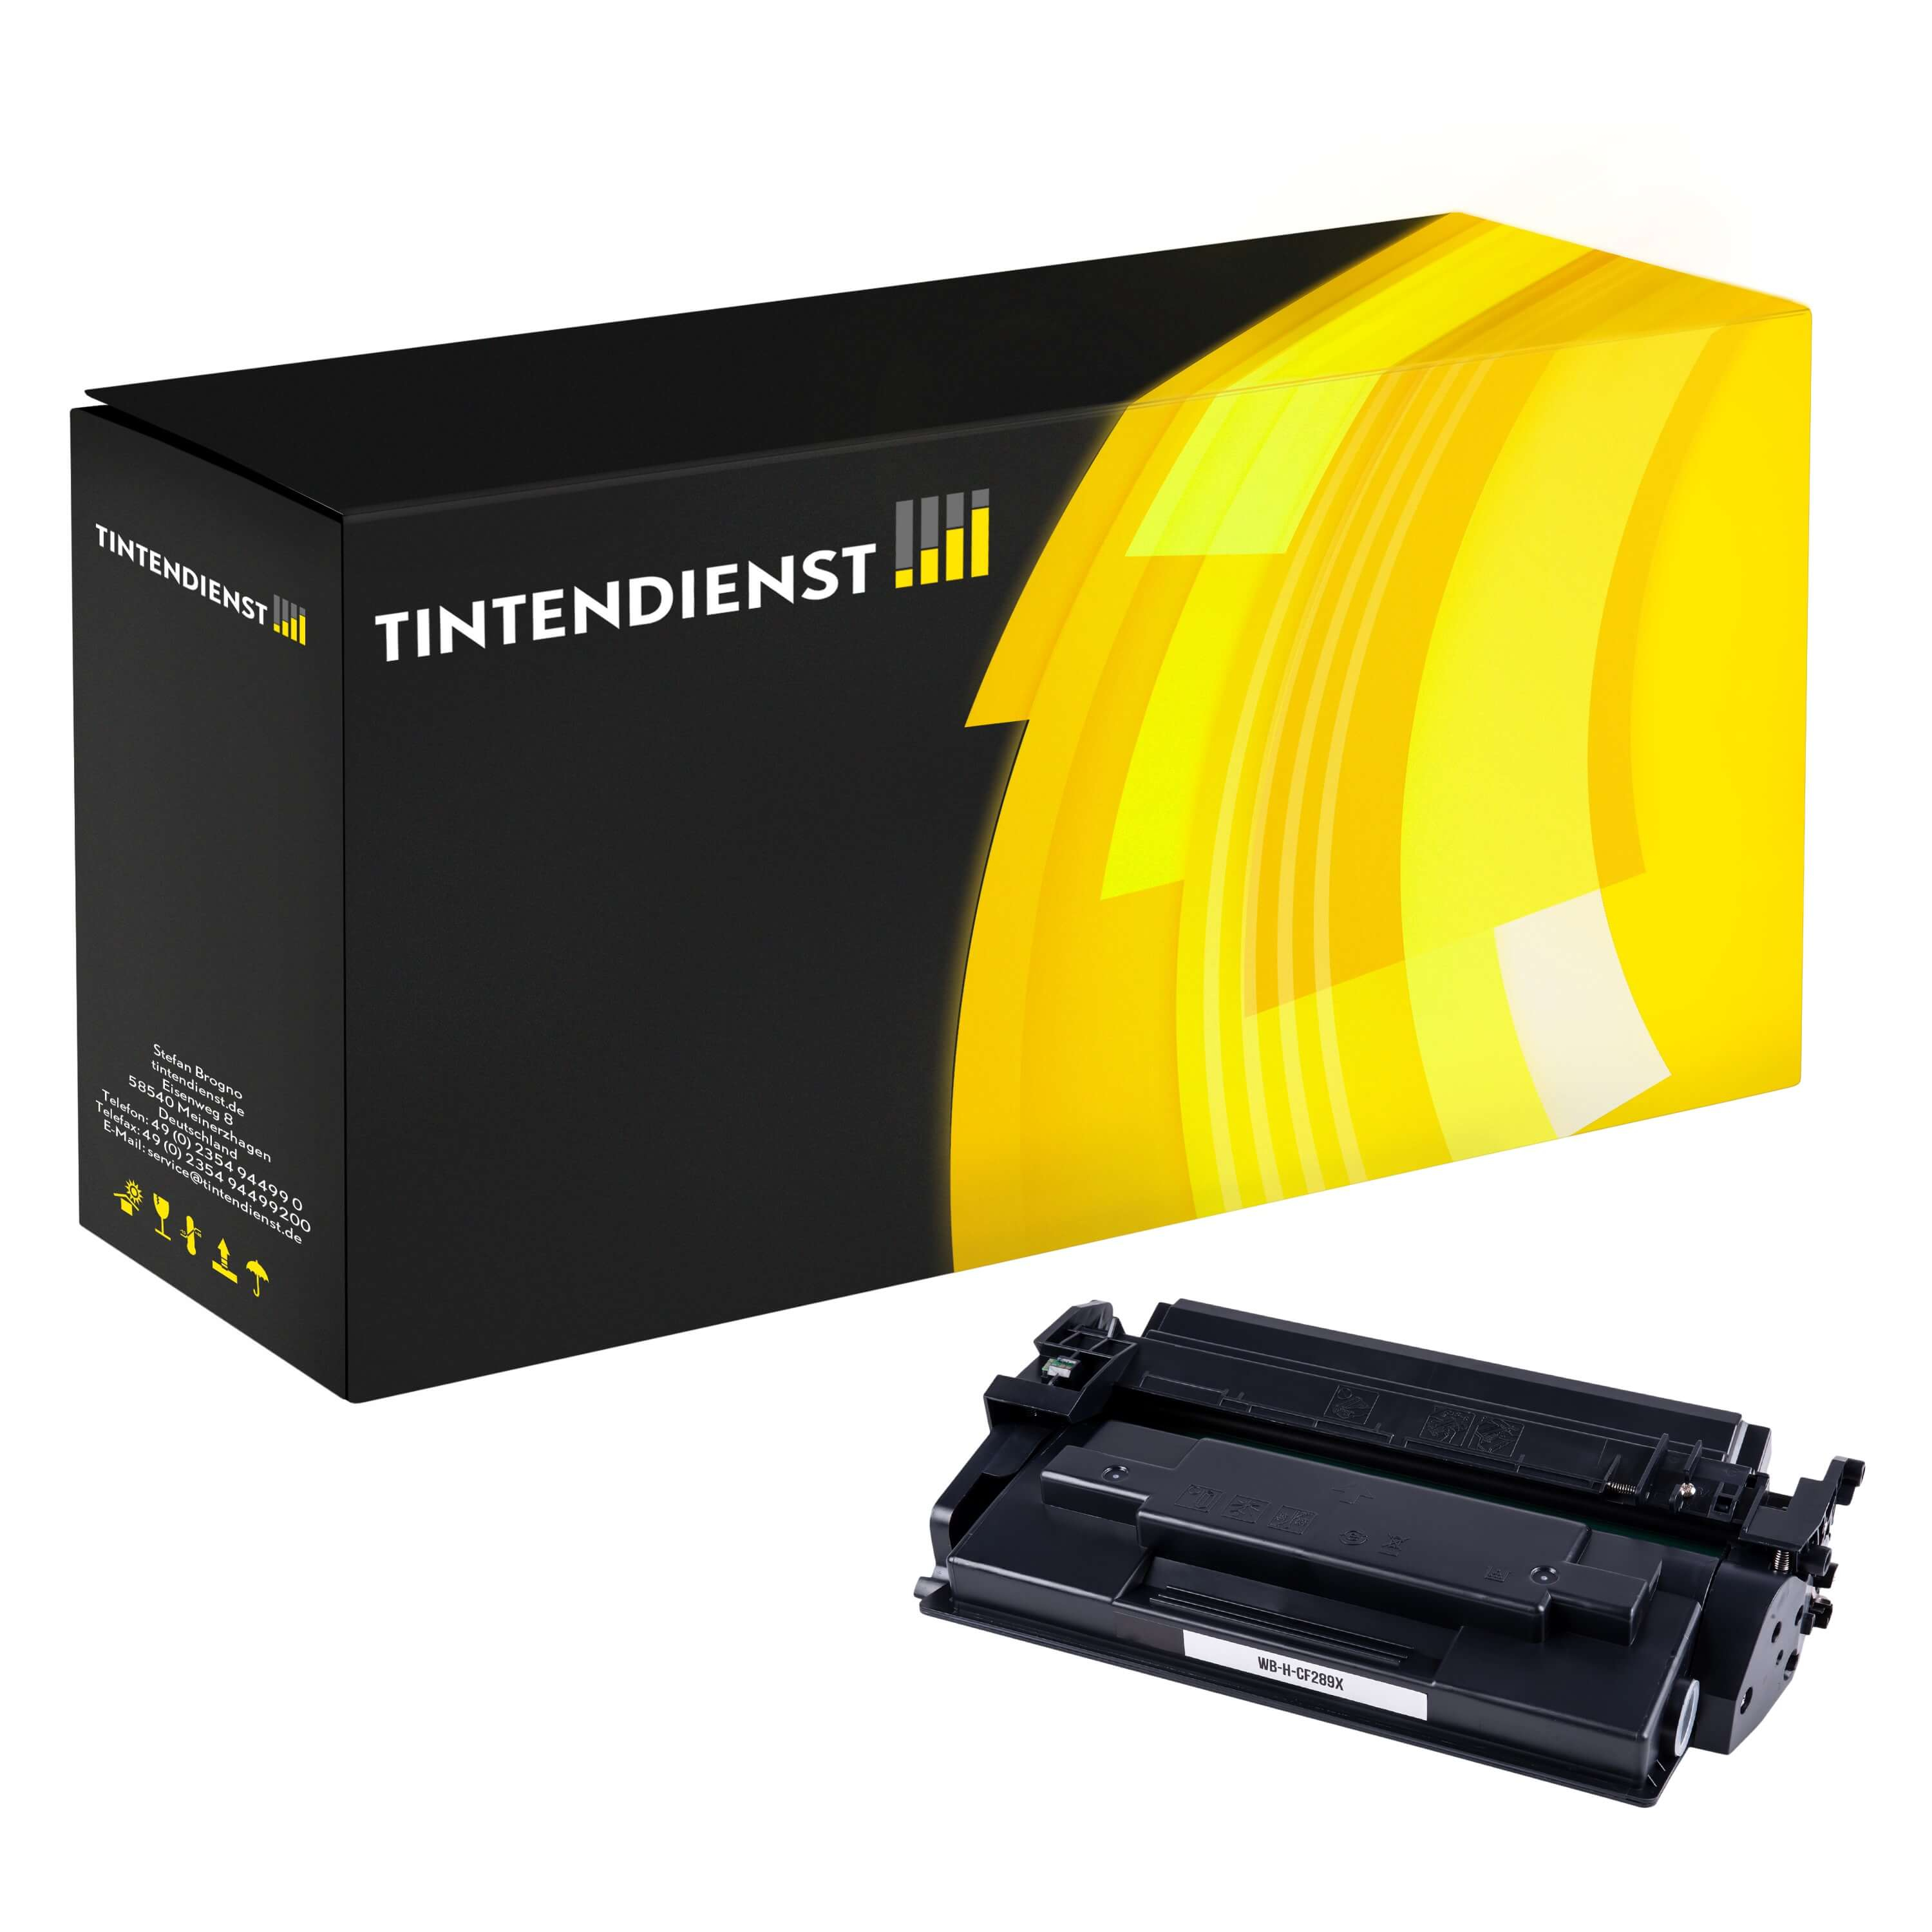 Toner kompatibel für HP LaserJet Managed E 50145 dn (CF289X / 89X) Schwarz